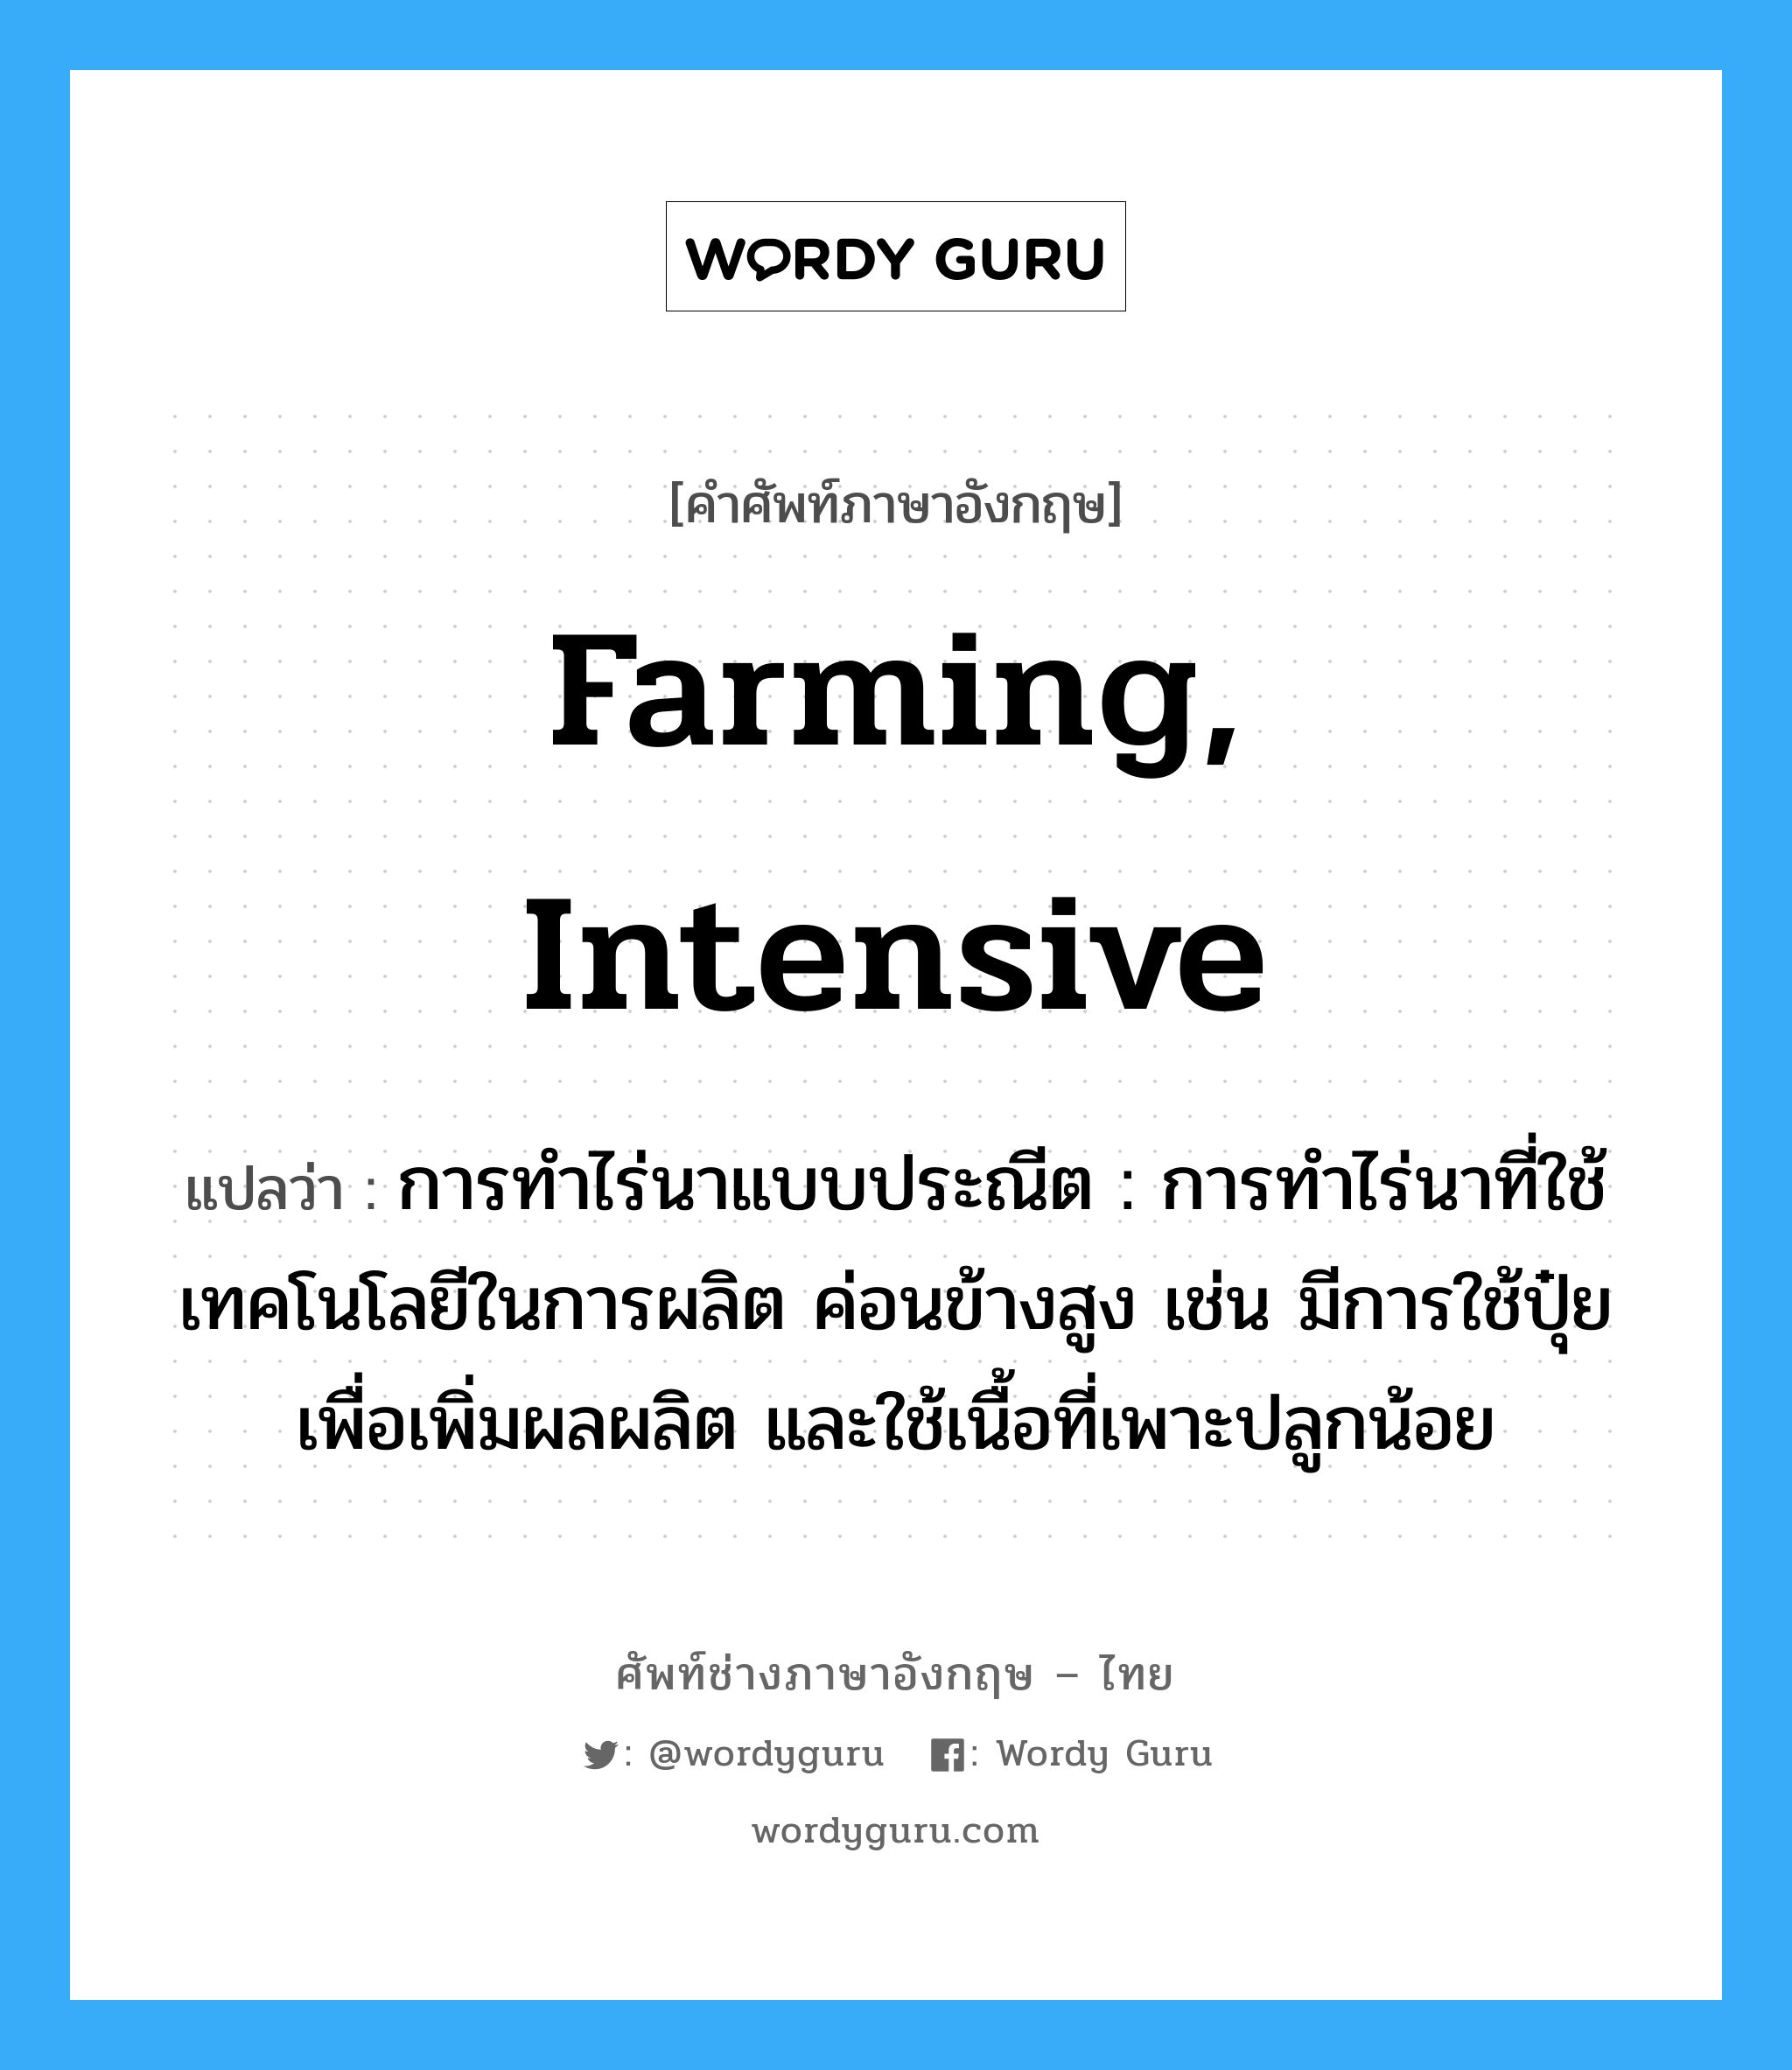 farming, intensive แปลว่า?, คำศัพท์ช่างภาษาอังกฤษ - ไทย farming, intensive คำศัพท์ภาษาอังกฤษ farming, intensive แปลว่า การทำไร่นาแบบประณีต : การทำไร่นาที่ใช้เทคโนโลยีในการผลิต ค่อนข้างสูง เช่น มีการใช้ปุ๋ยเพื่อเพิ่มผลผลิต และใช้เนื้อที่เพาะปลูกน้อย